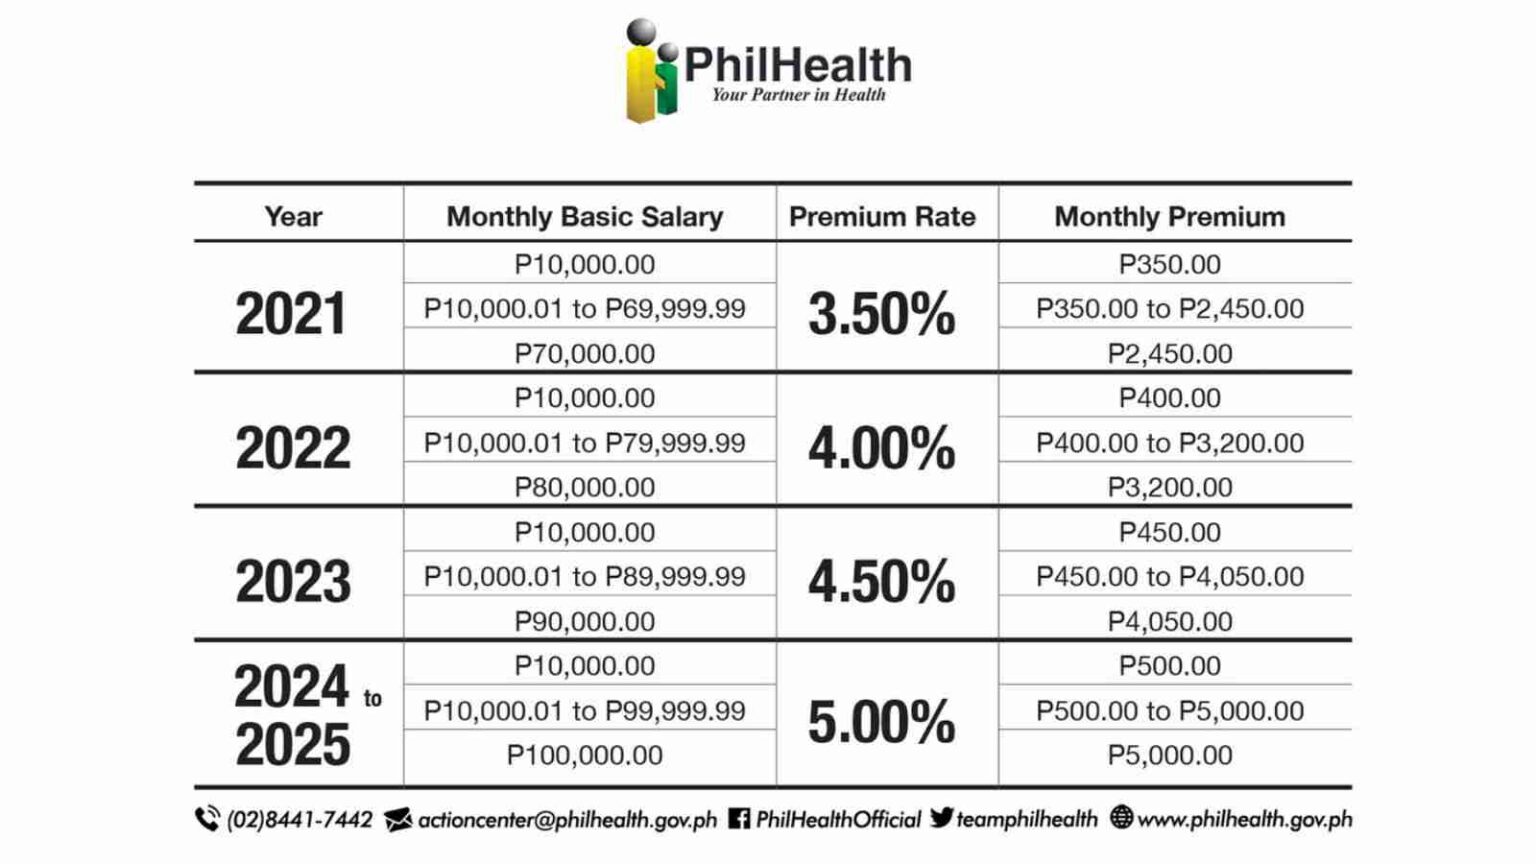 Philhealth Monthly Premiums 2023 2024 2025 1536x864 